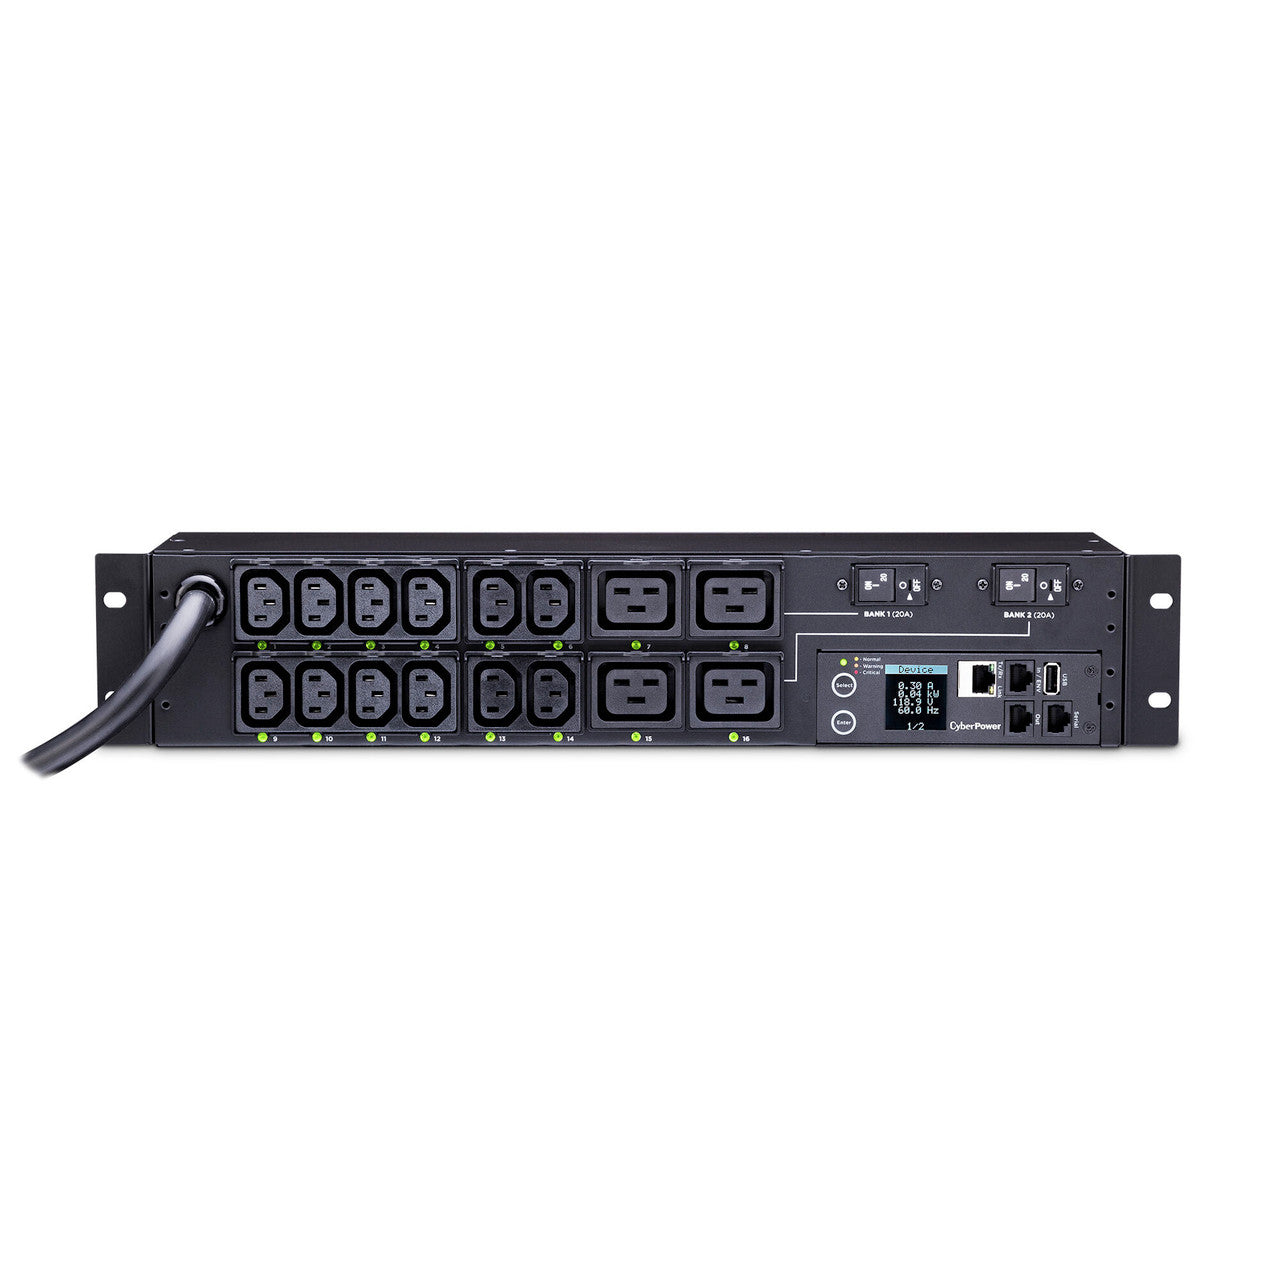 CyberPower PDU41008 Switched PDU 30A 220V (12) IEC-C13 (4) IEC-C19 Out L6-30P 12ft 2U 3YR Wty